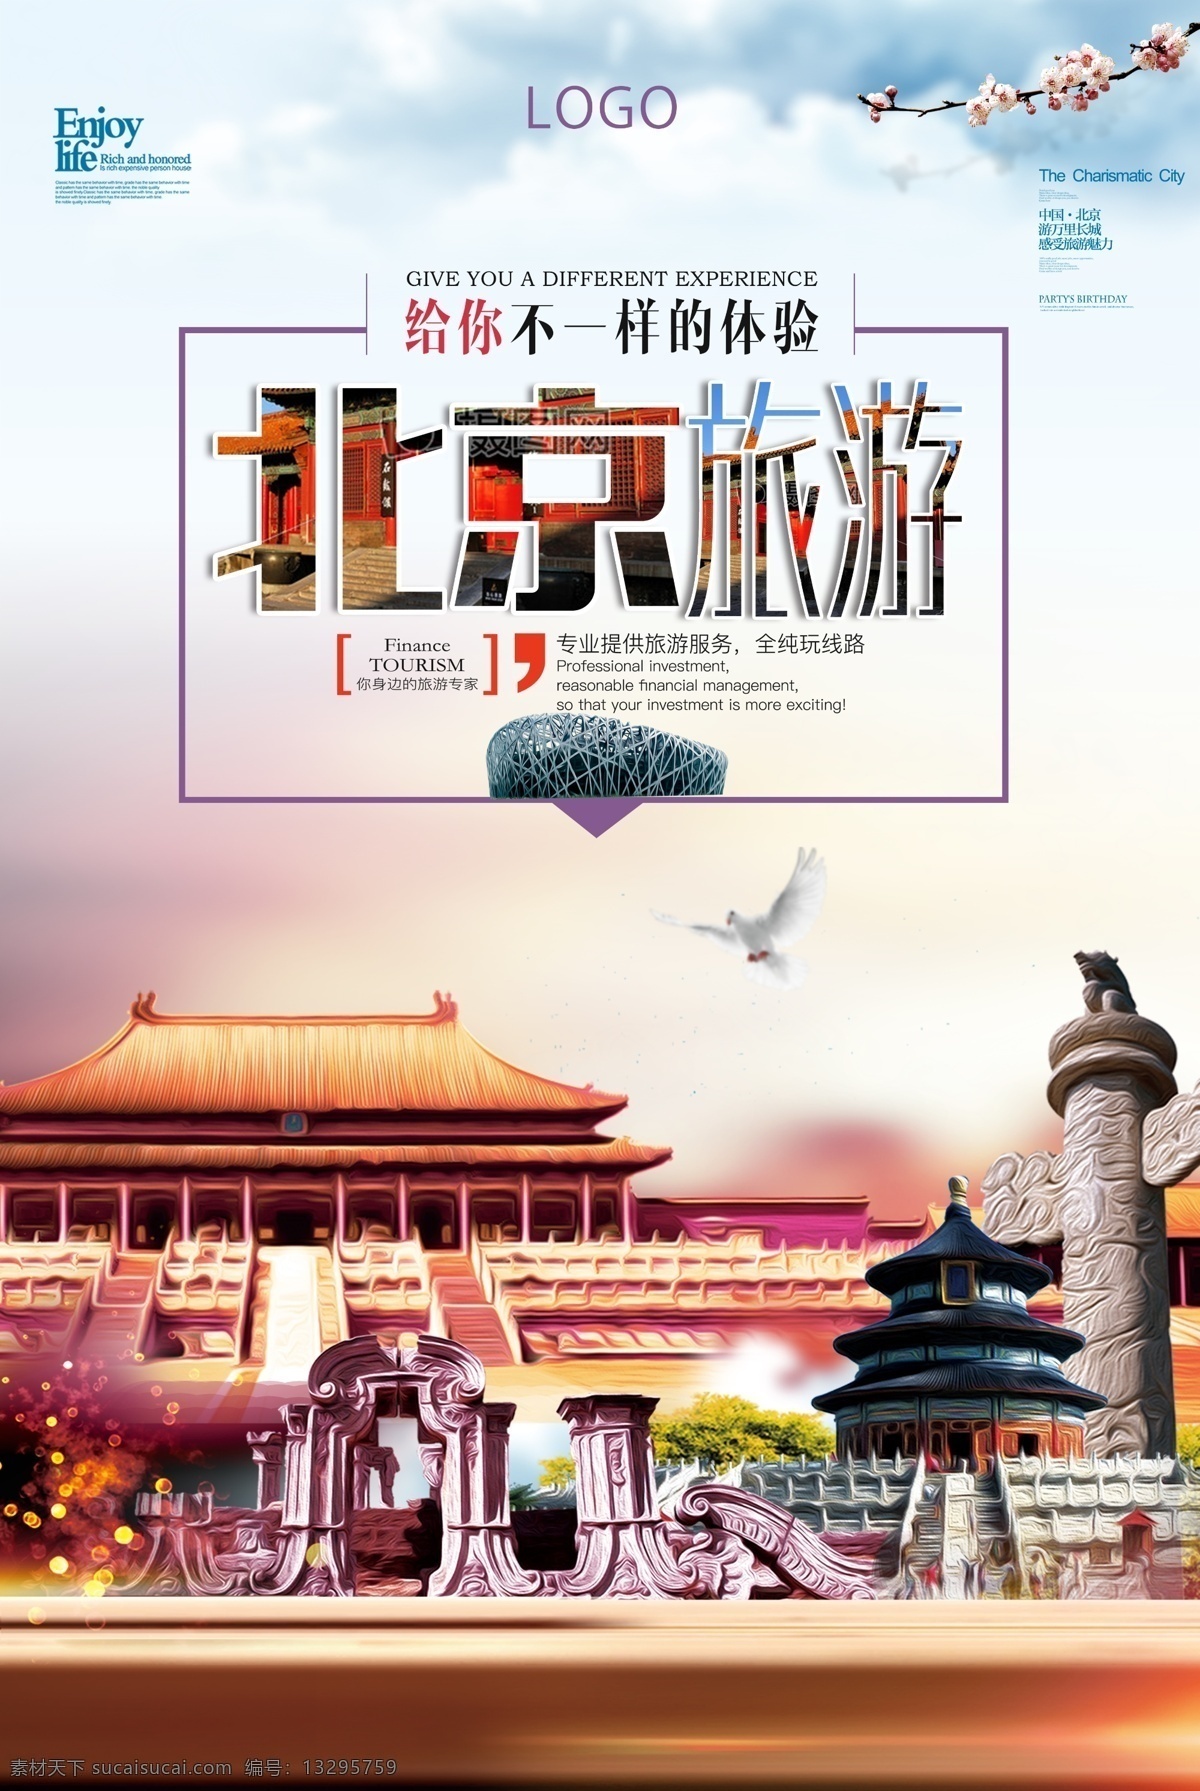 大气 风格 北京城 市 旅游 宣传 模版 城市 北京 互联网 信息 科技 央视 大楼 光线 连接 感 兴趣 免费模版